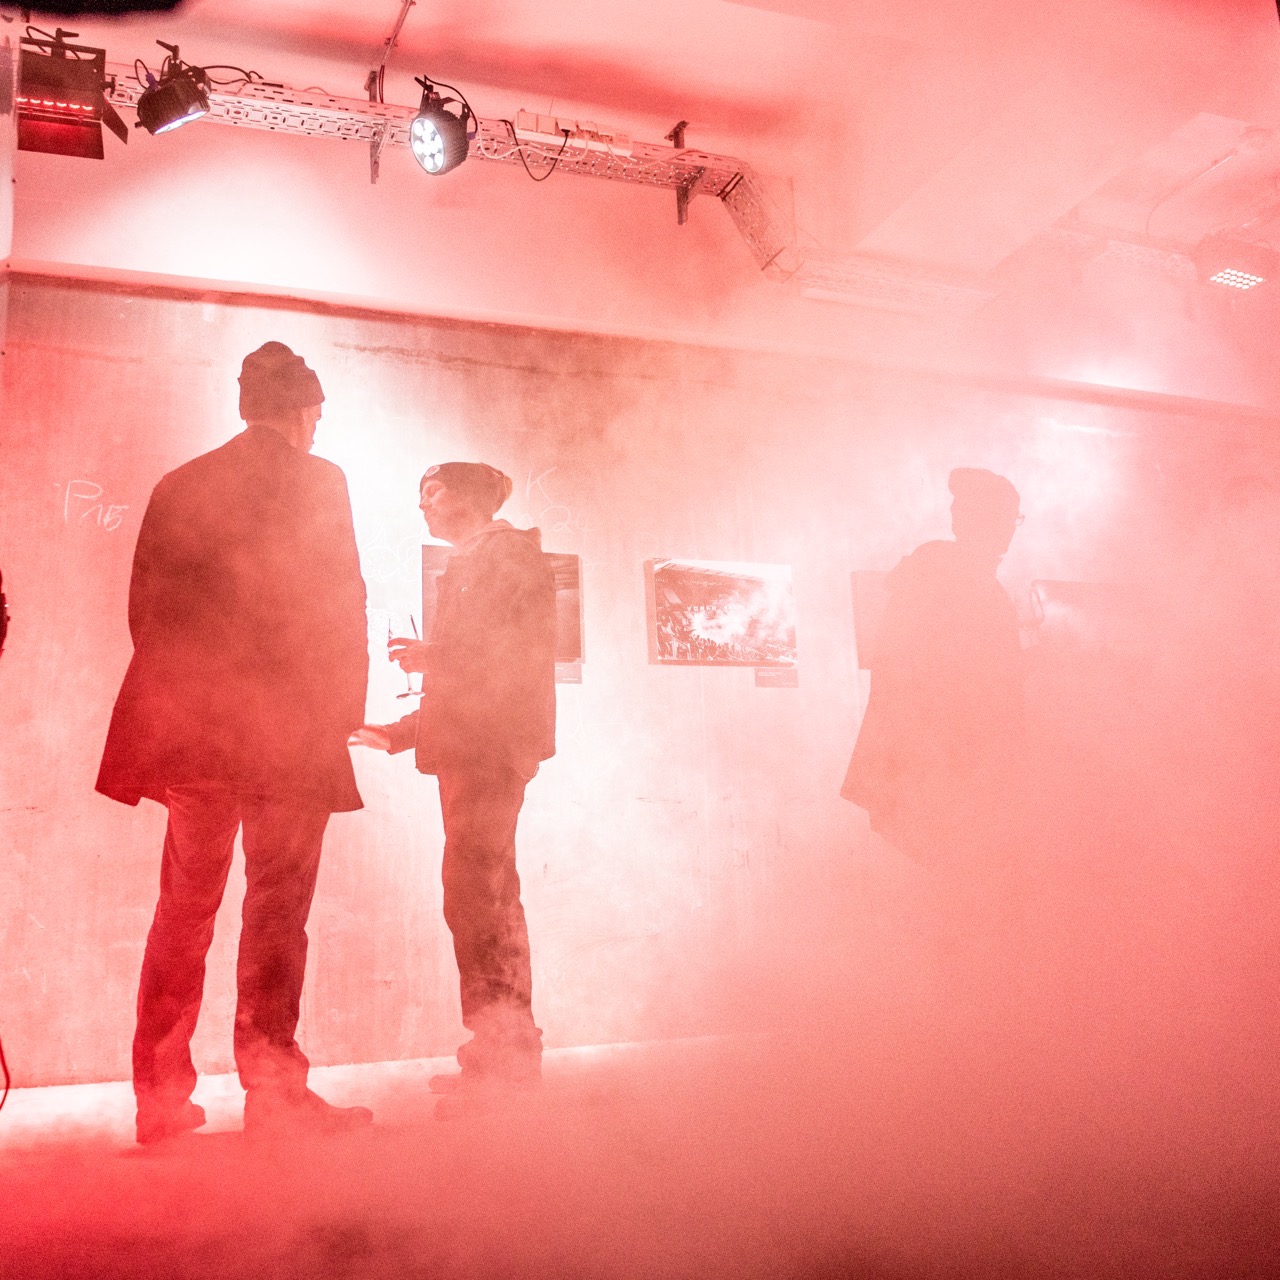 FC St. Pauli visuell: Die große Fotoausstellung feierte ihre Vernissage im Frühjahr 2018